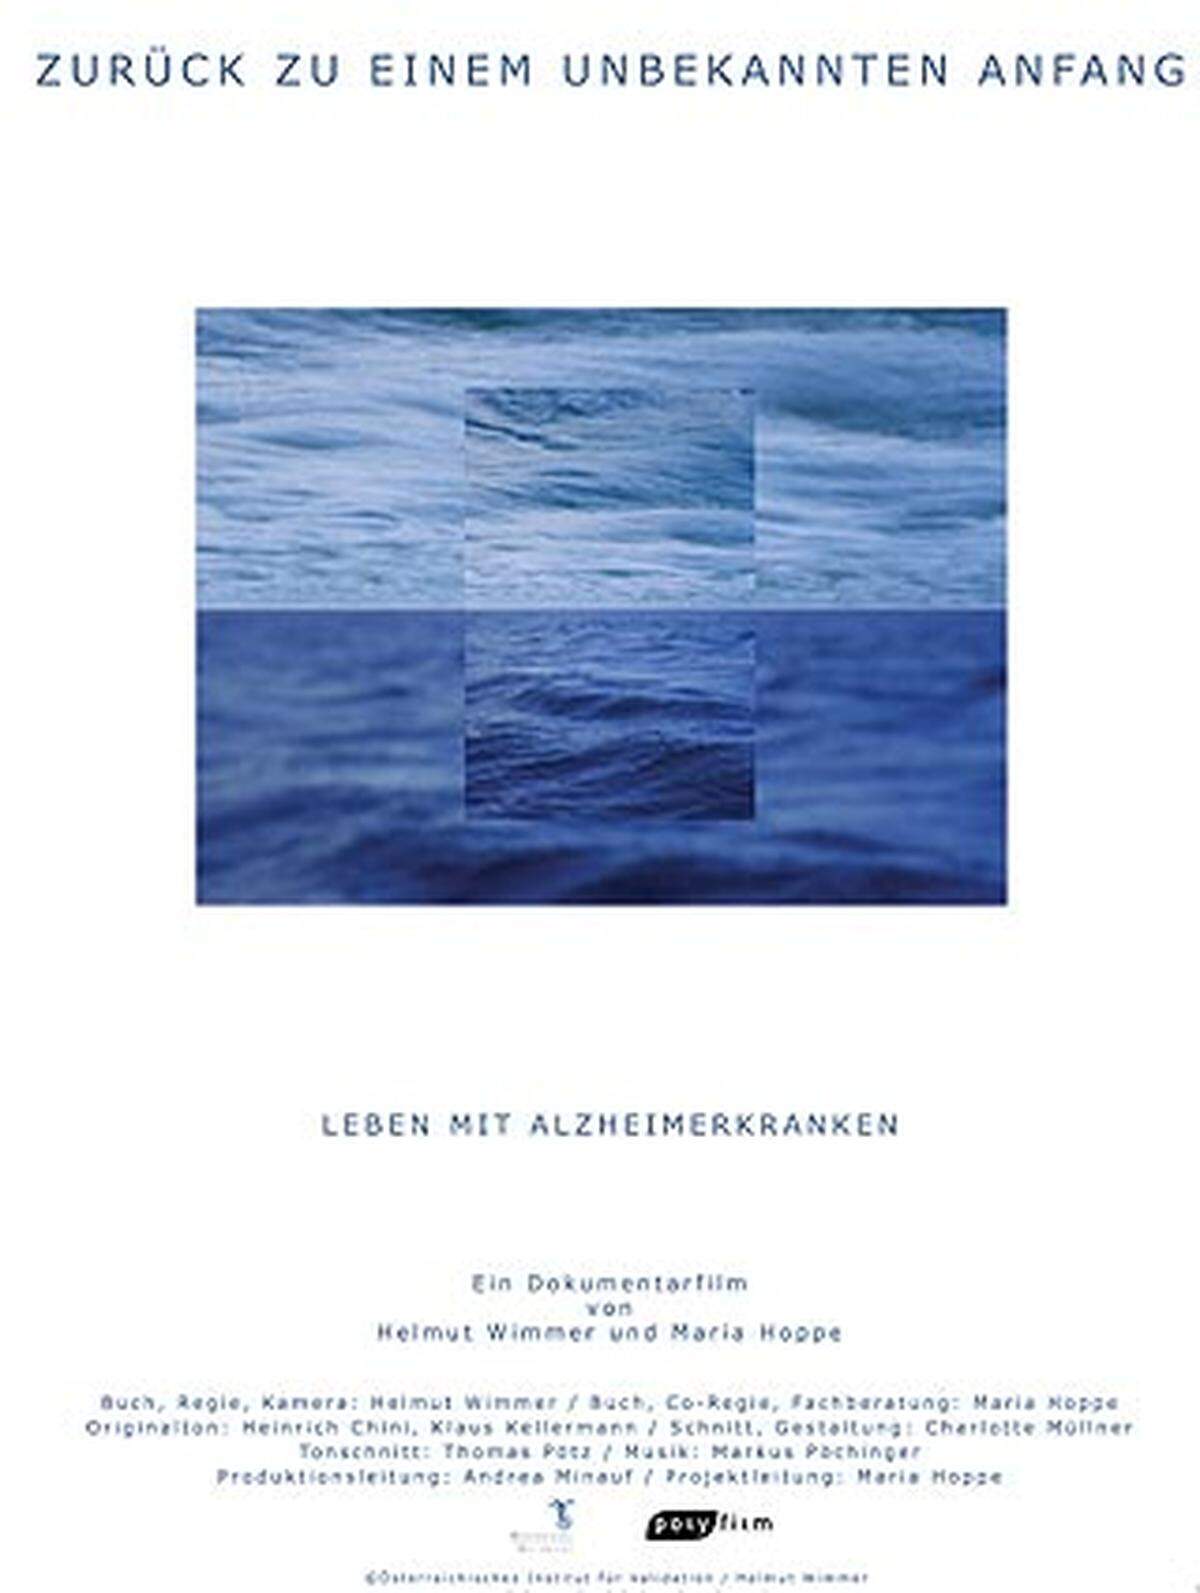 Der österreichische Dokumentarfilm "Zurück zu einem unbekannten Anfang" von Helmut Wimmer stellt das Leben mit Alzheimerkranken in den Mittelpunkt.